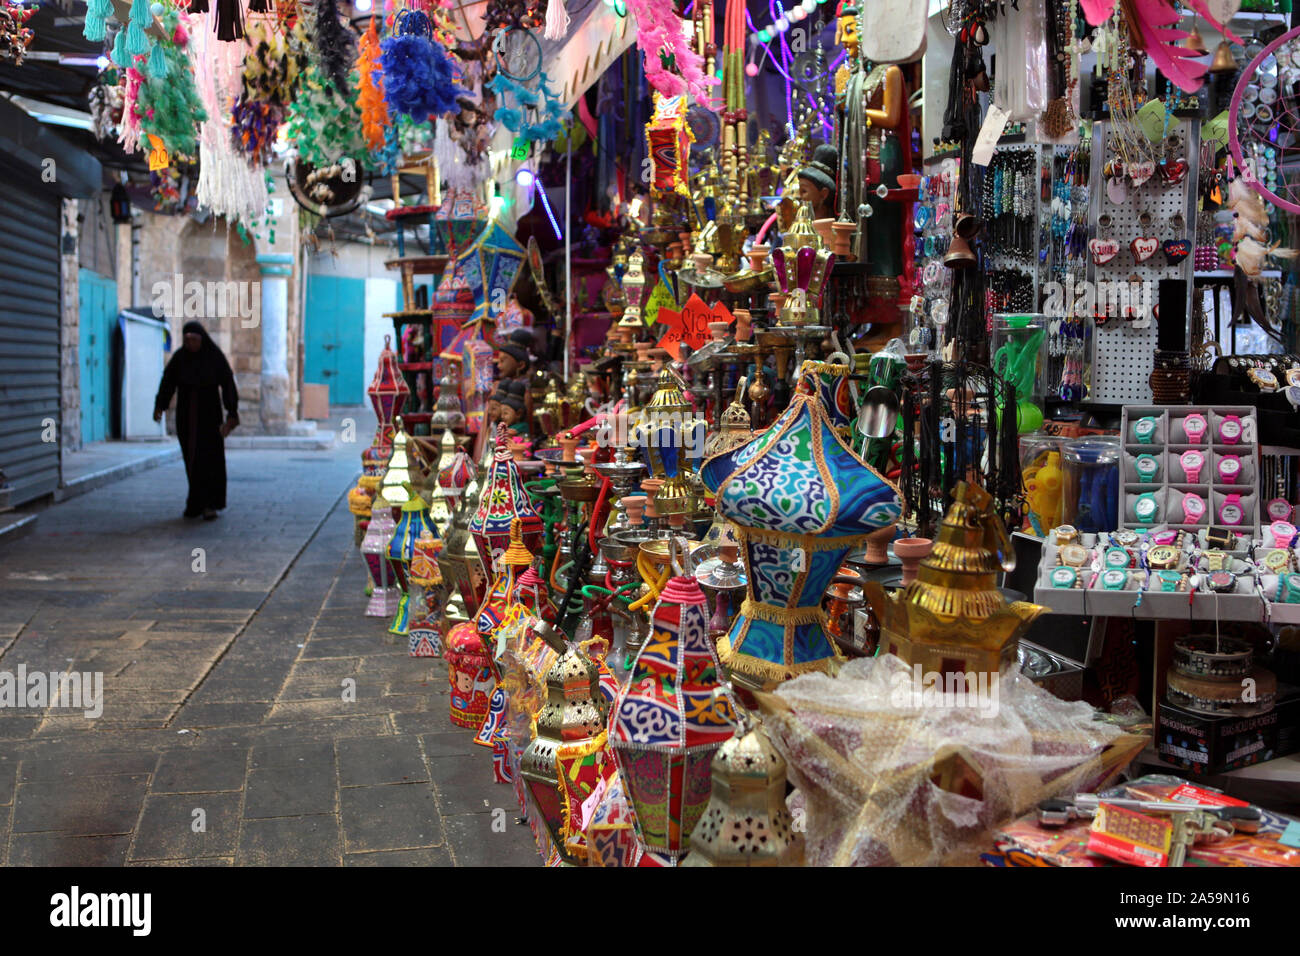 ACRE,ISRAËL - 3 mai, 2019 : marché arabe de l'Est de la vieille ville d'Acre Acre propose une variété de produits au Moyen-Orient et souvenirs traditionnels. Arabes de l'Est Banque D'Images